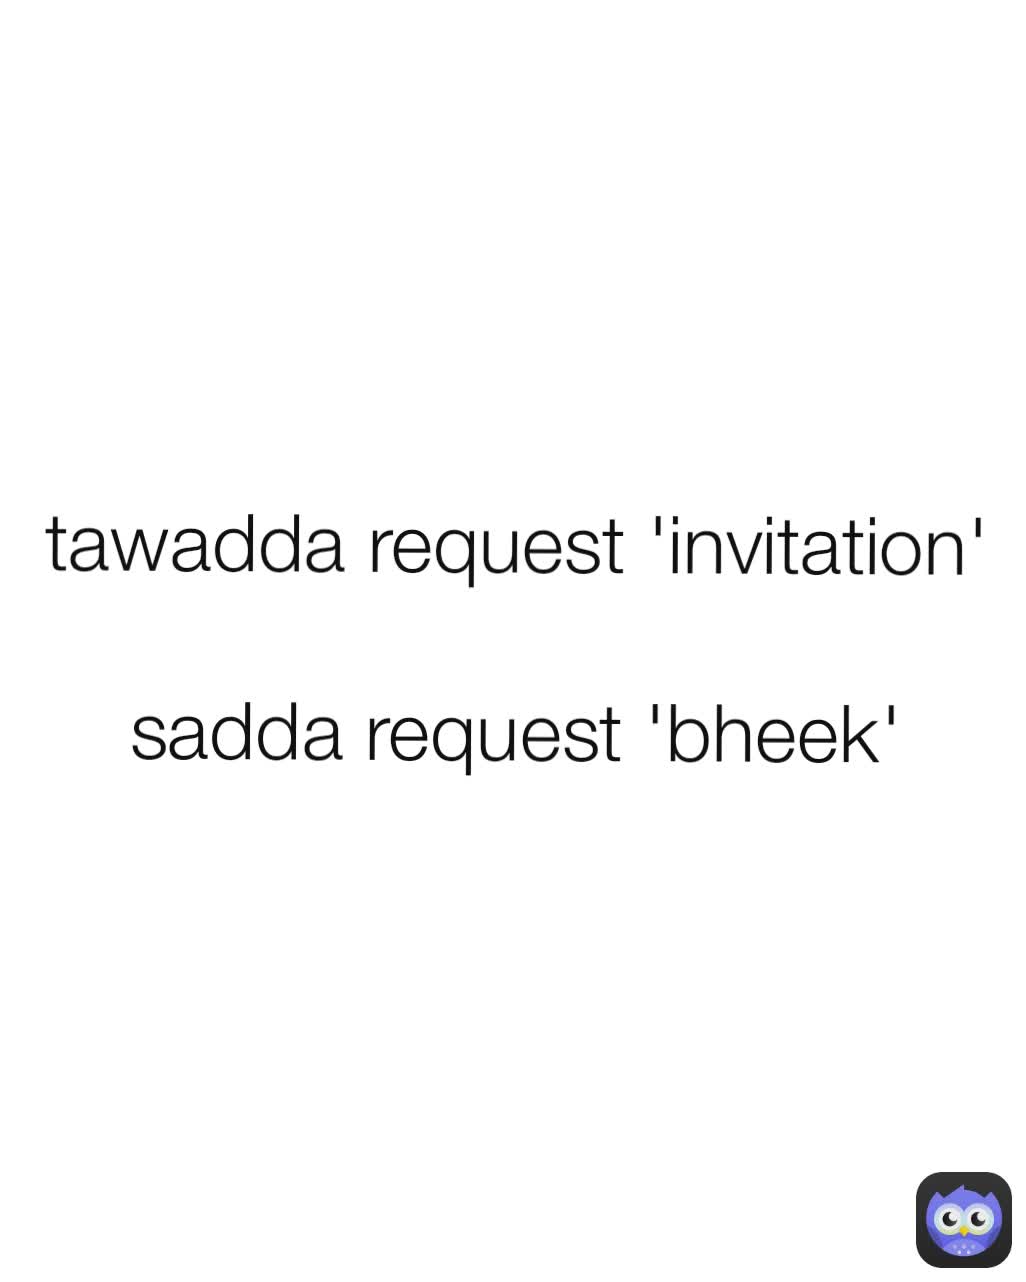 tawadda request 'invitation'

sadda request 'bheek'